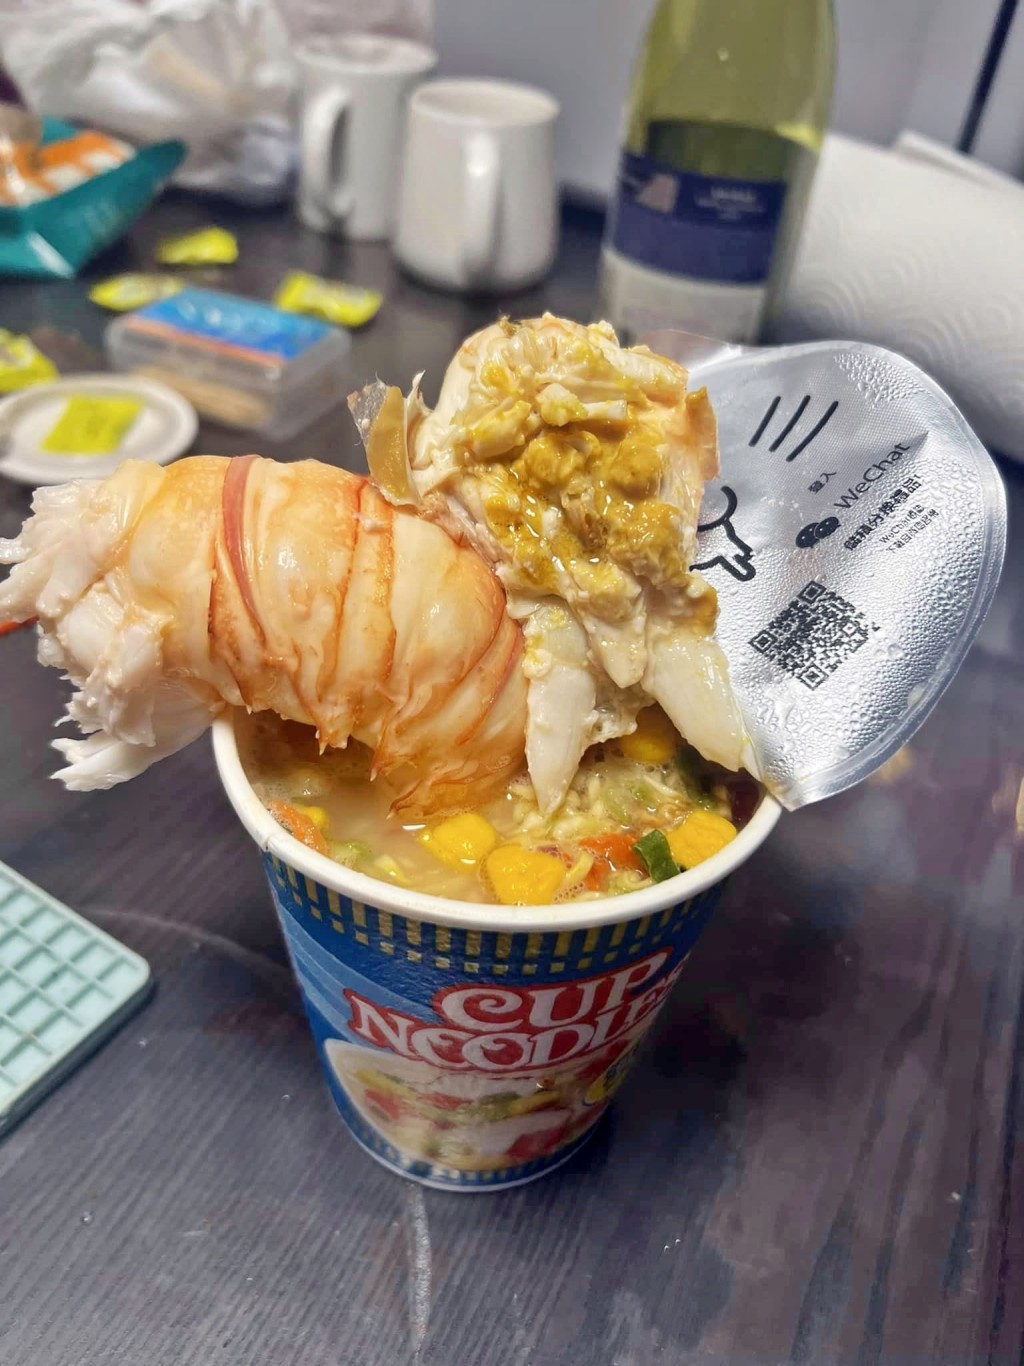 樓主以「一個人食嘢，簡簡單單整返個海鮮杯麵算，一隻蝦一個杯麵仲唔簡單啊」為題上載相片。fb「香港街市魚類海鮮研究社」圖片